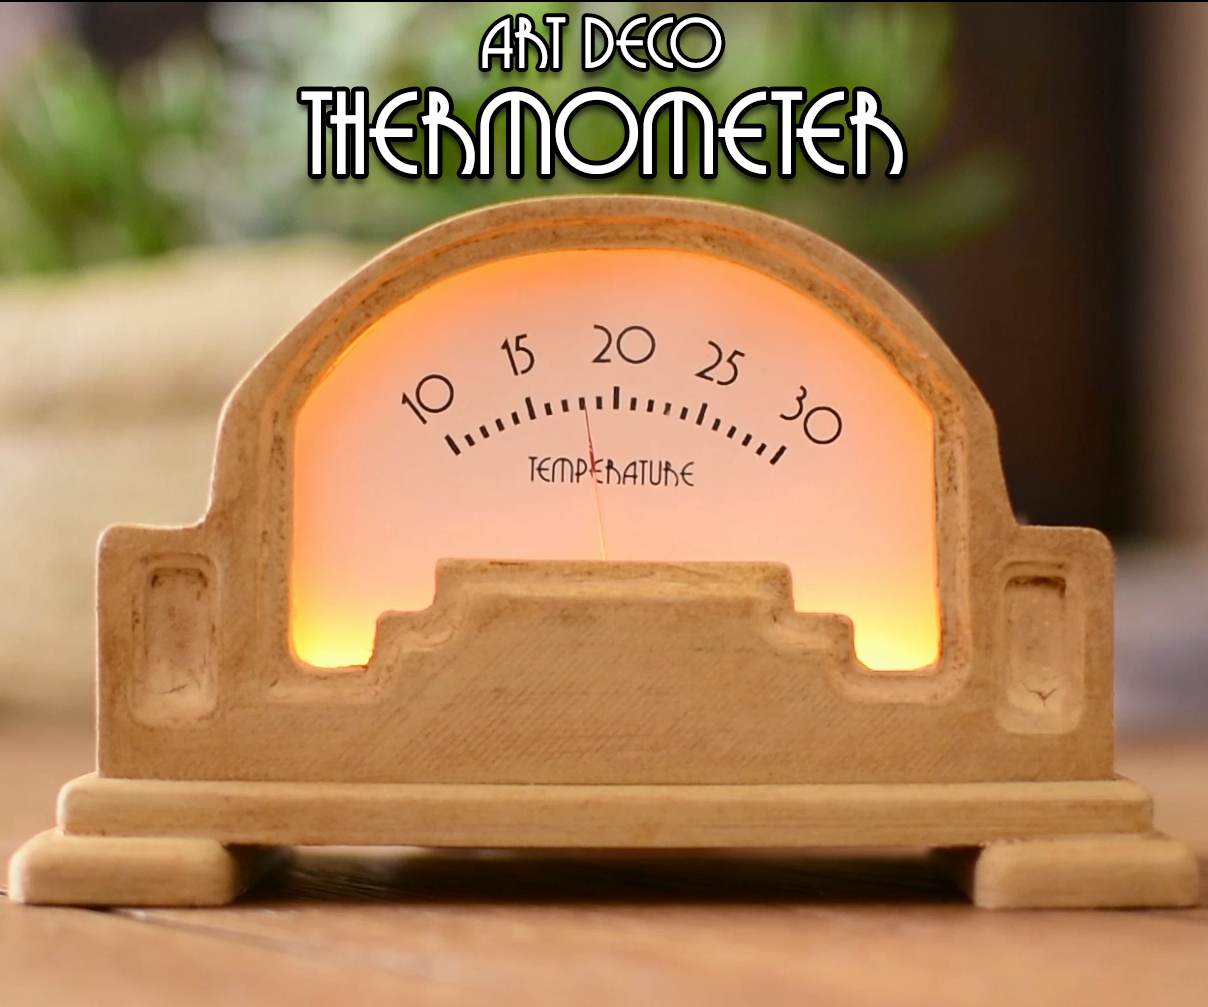 DIY Art Deco Analog Thermometer Using Arduino